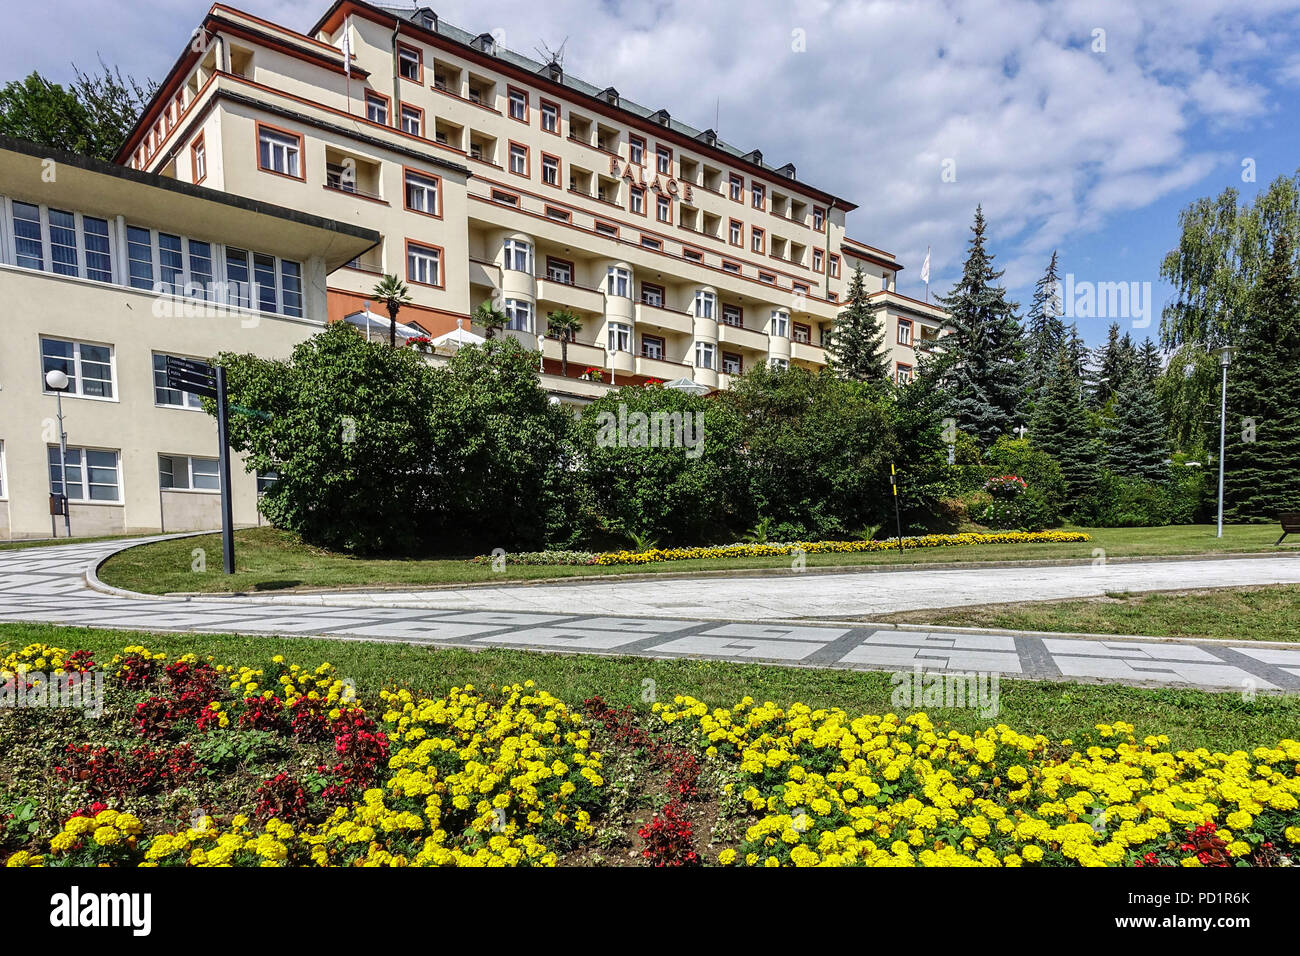 Hotel Palace, Luhacovice est une ville thermale dans la région de Zlin, en Moravie, en République tchèque. Banque D'Images